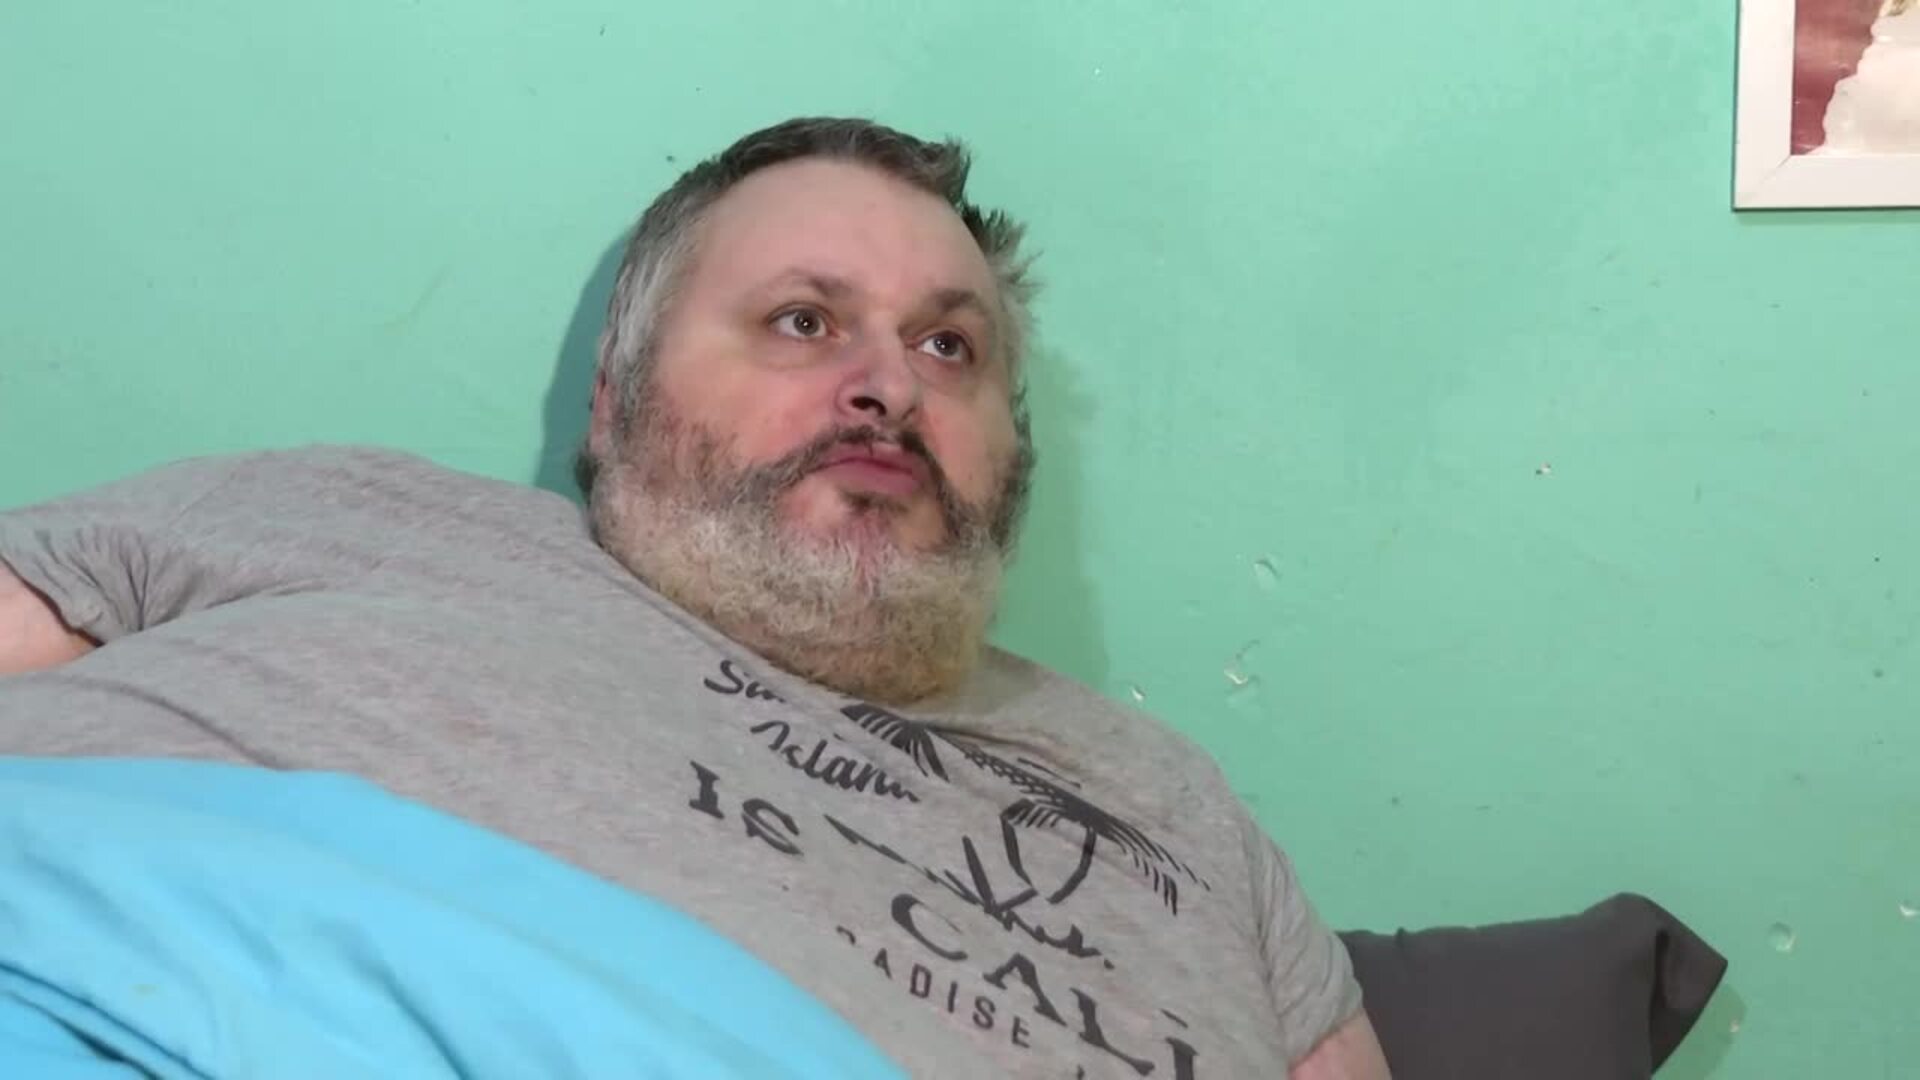 Un hombre con obesidad mórbida pide ayuda al llevar tres meses sin moverse de la cama